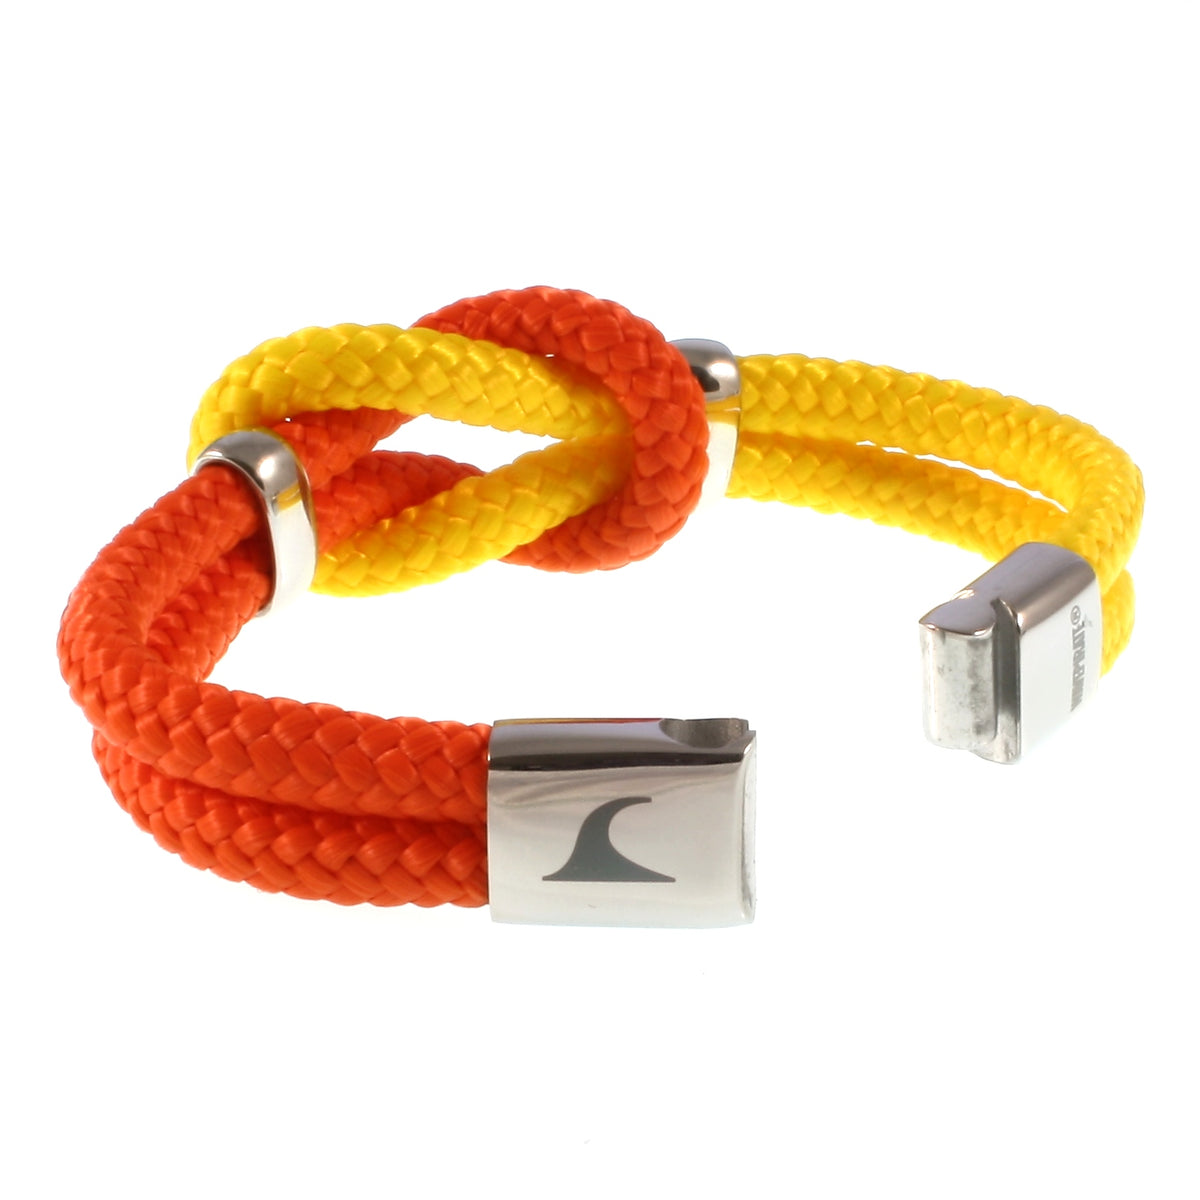 Damen-Segeltau-armband-pure-orange-gelb-silber-geflochten-Edelstahlverschluss-offen-wavepirate-shop-st